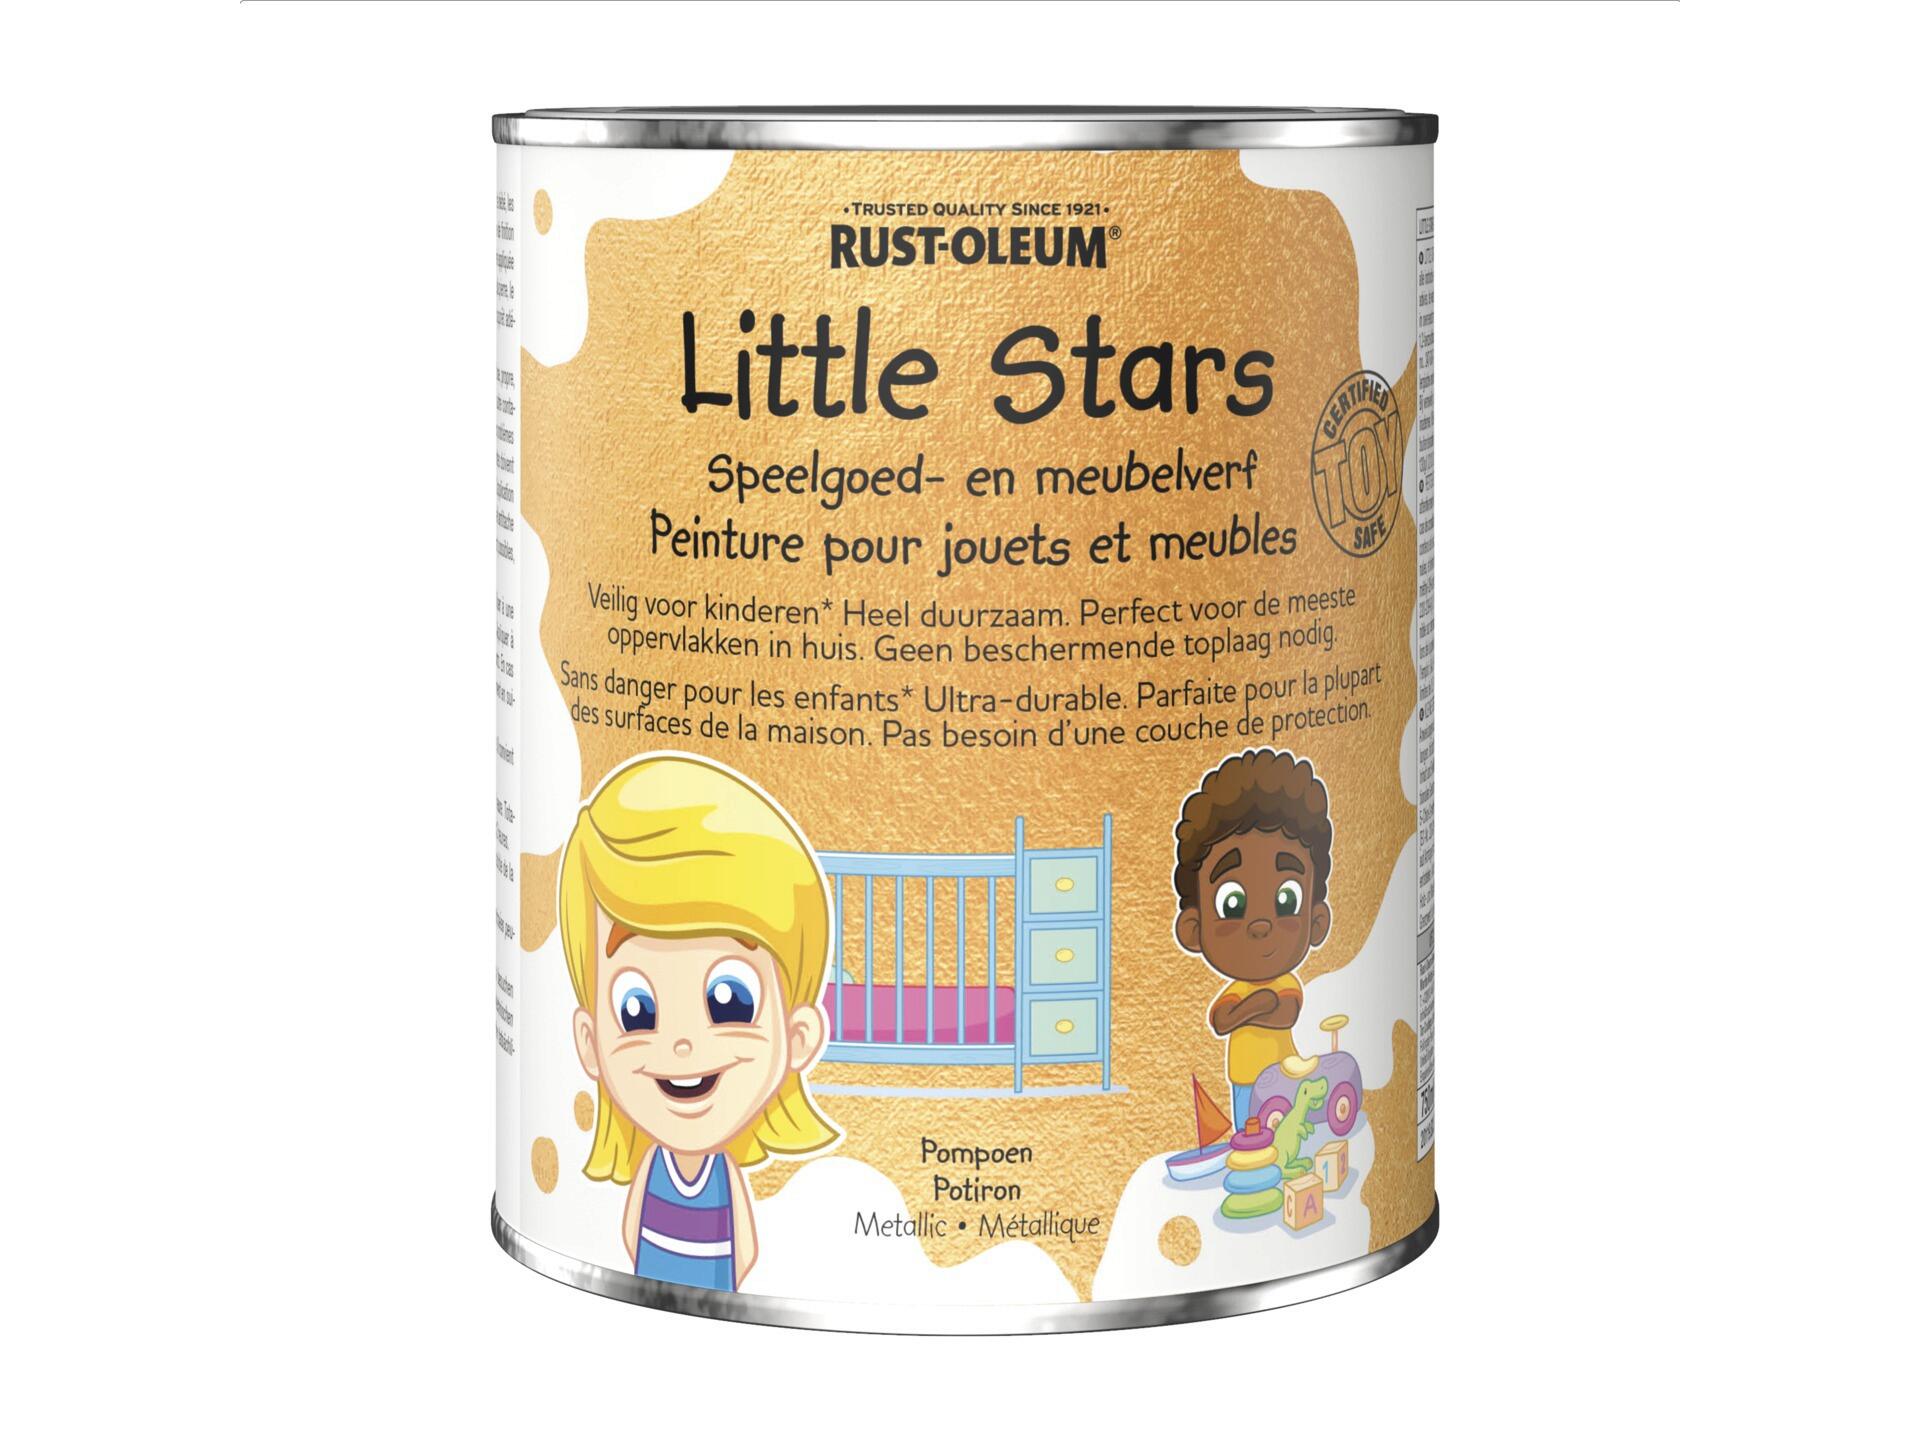 Rust-oleum Little Stars peinture pour meubles et jouets 750ml potiron